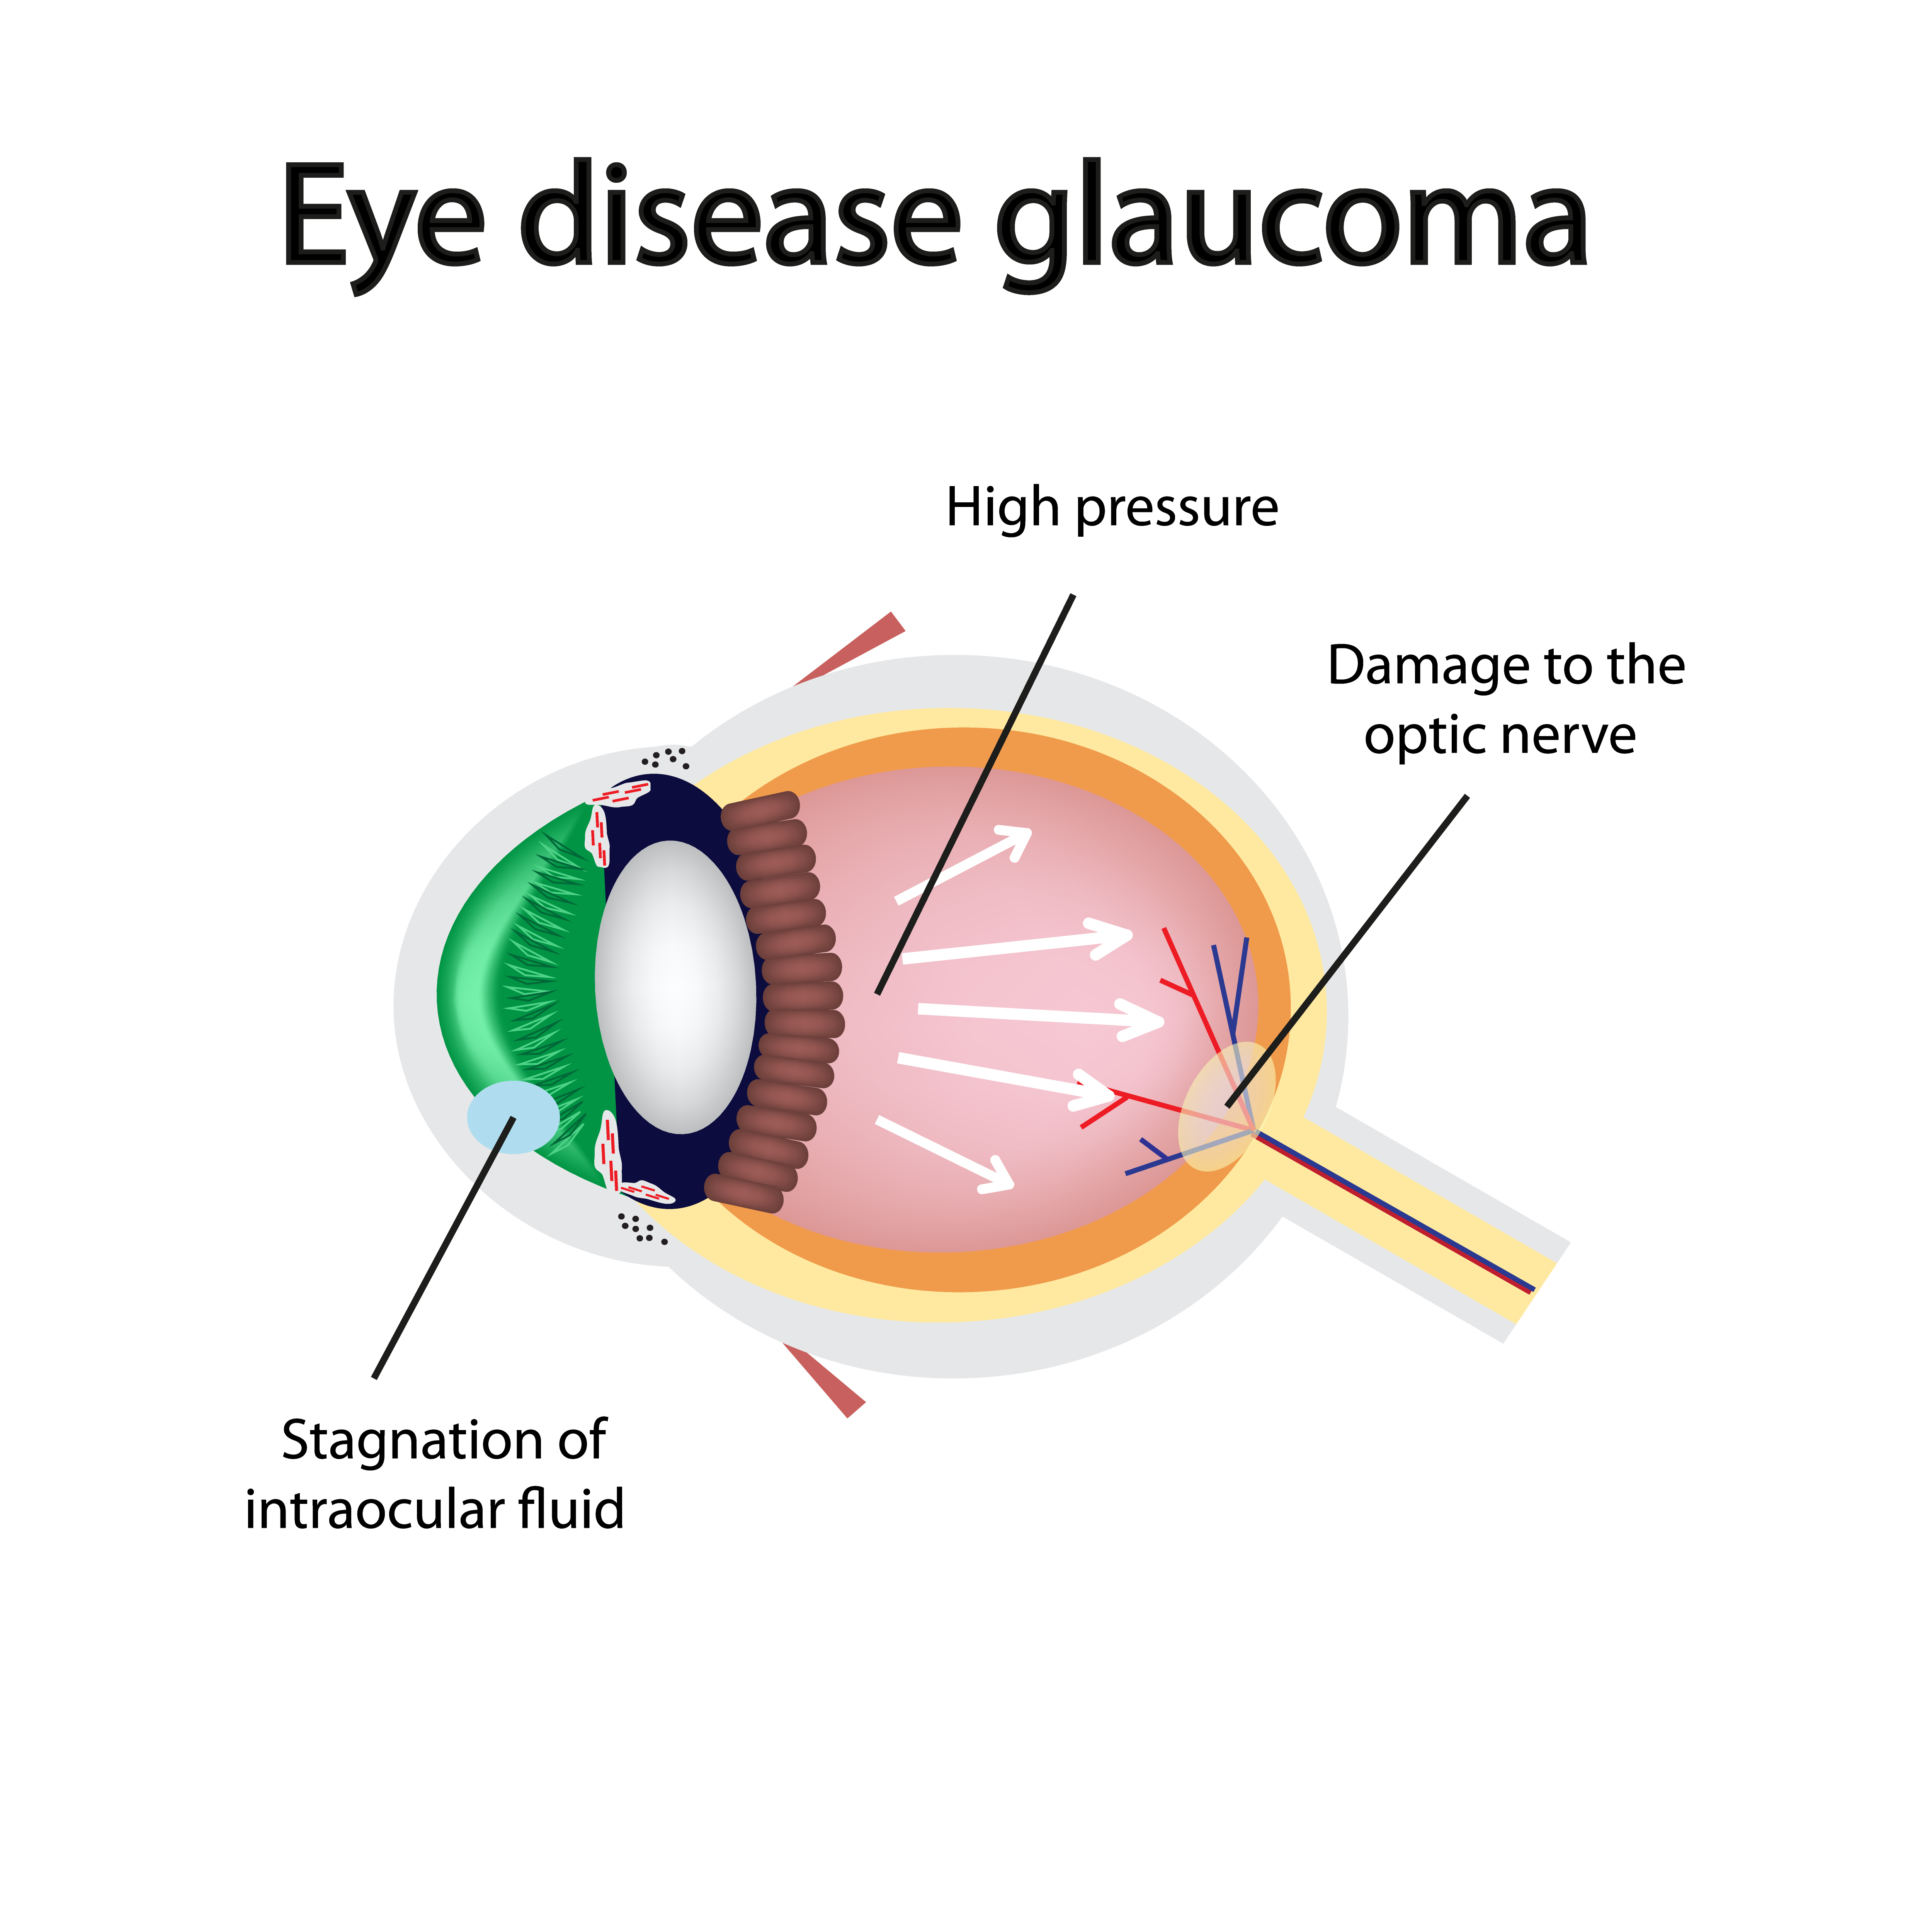 Eye disease glaucoma diagram